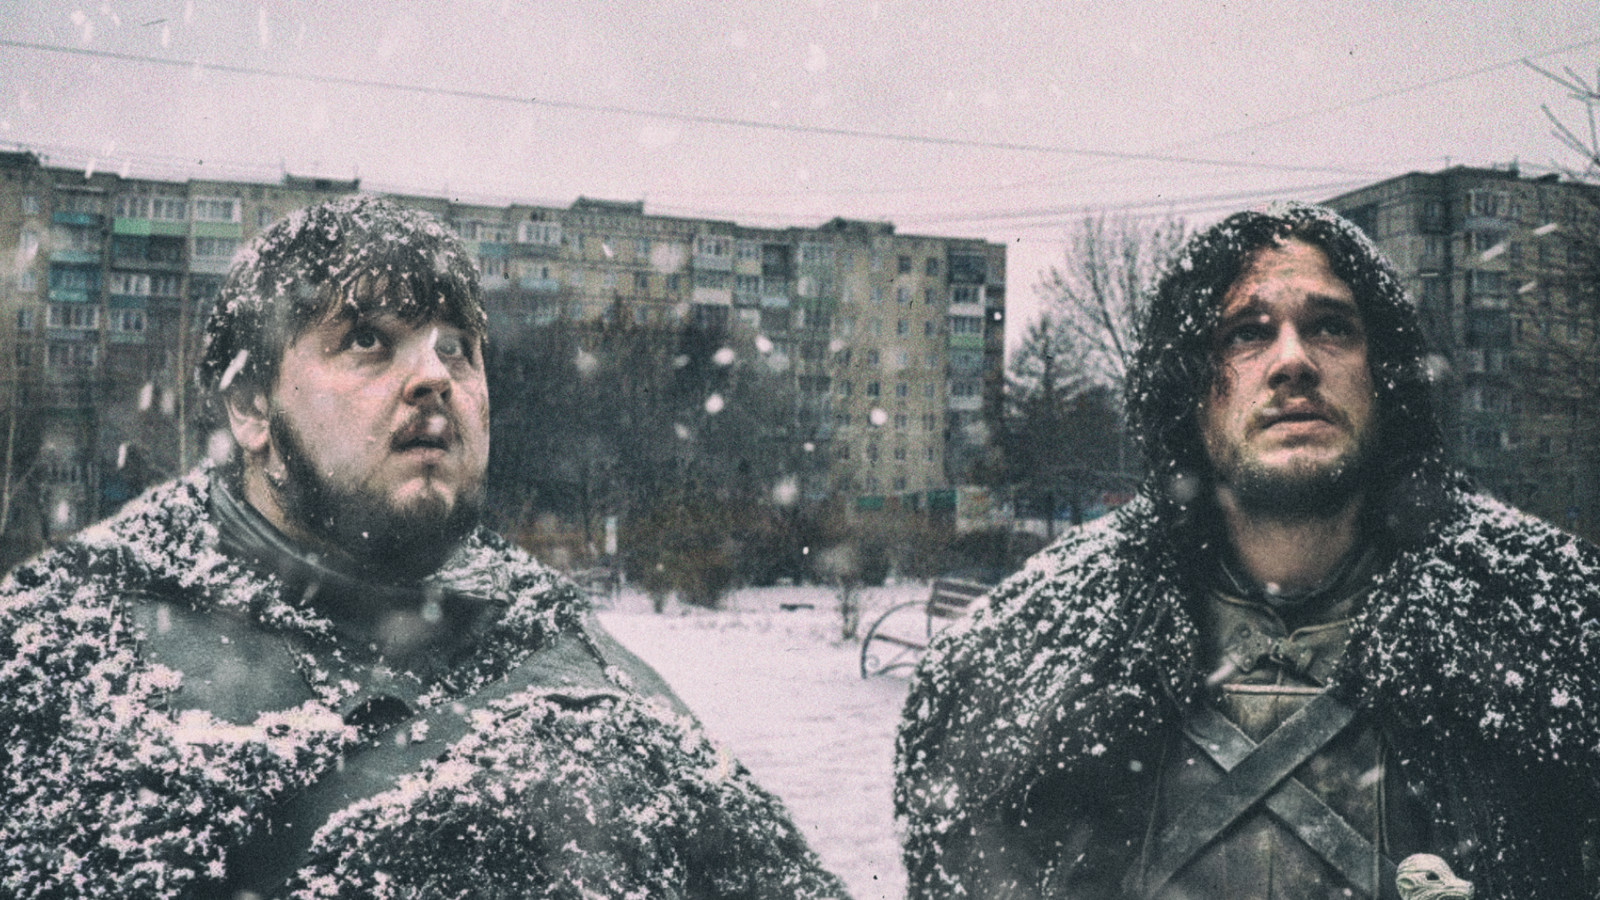 Ryazan. First day of winter. - My, Ryazan, Game of Thrones, Winter, First day of winter, 2D Among Us, Jon Snow, Samwell Tarly